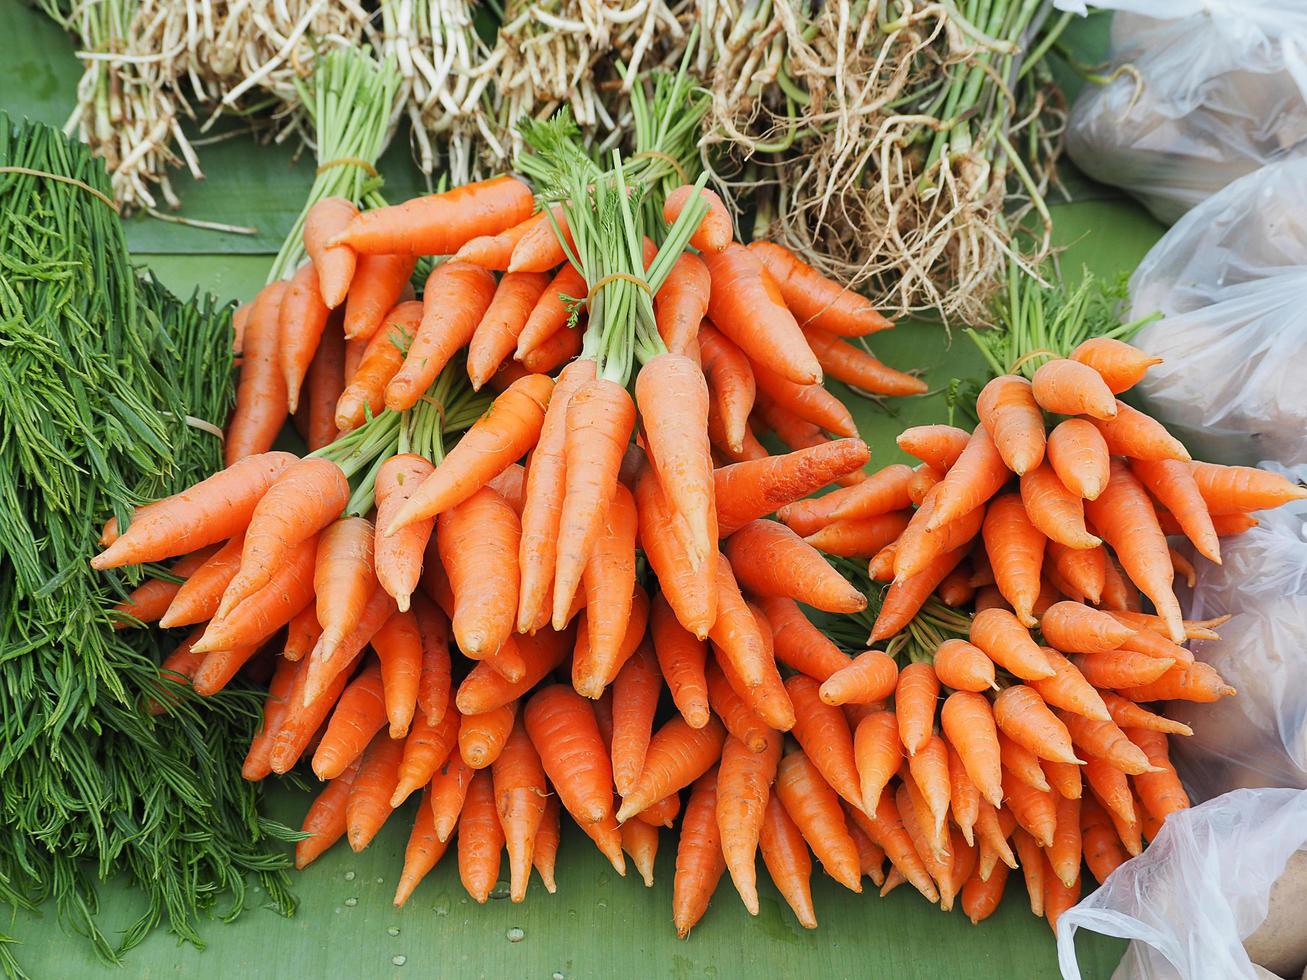 carottes et légumes biologiques frais à vendre sur le marché photo